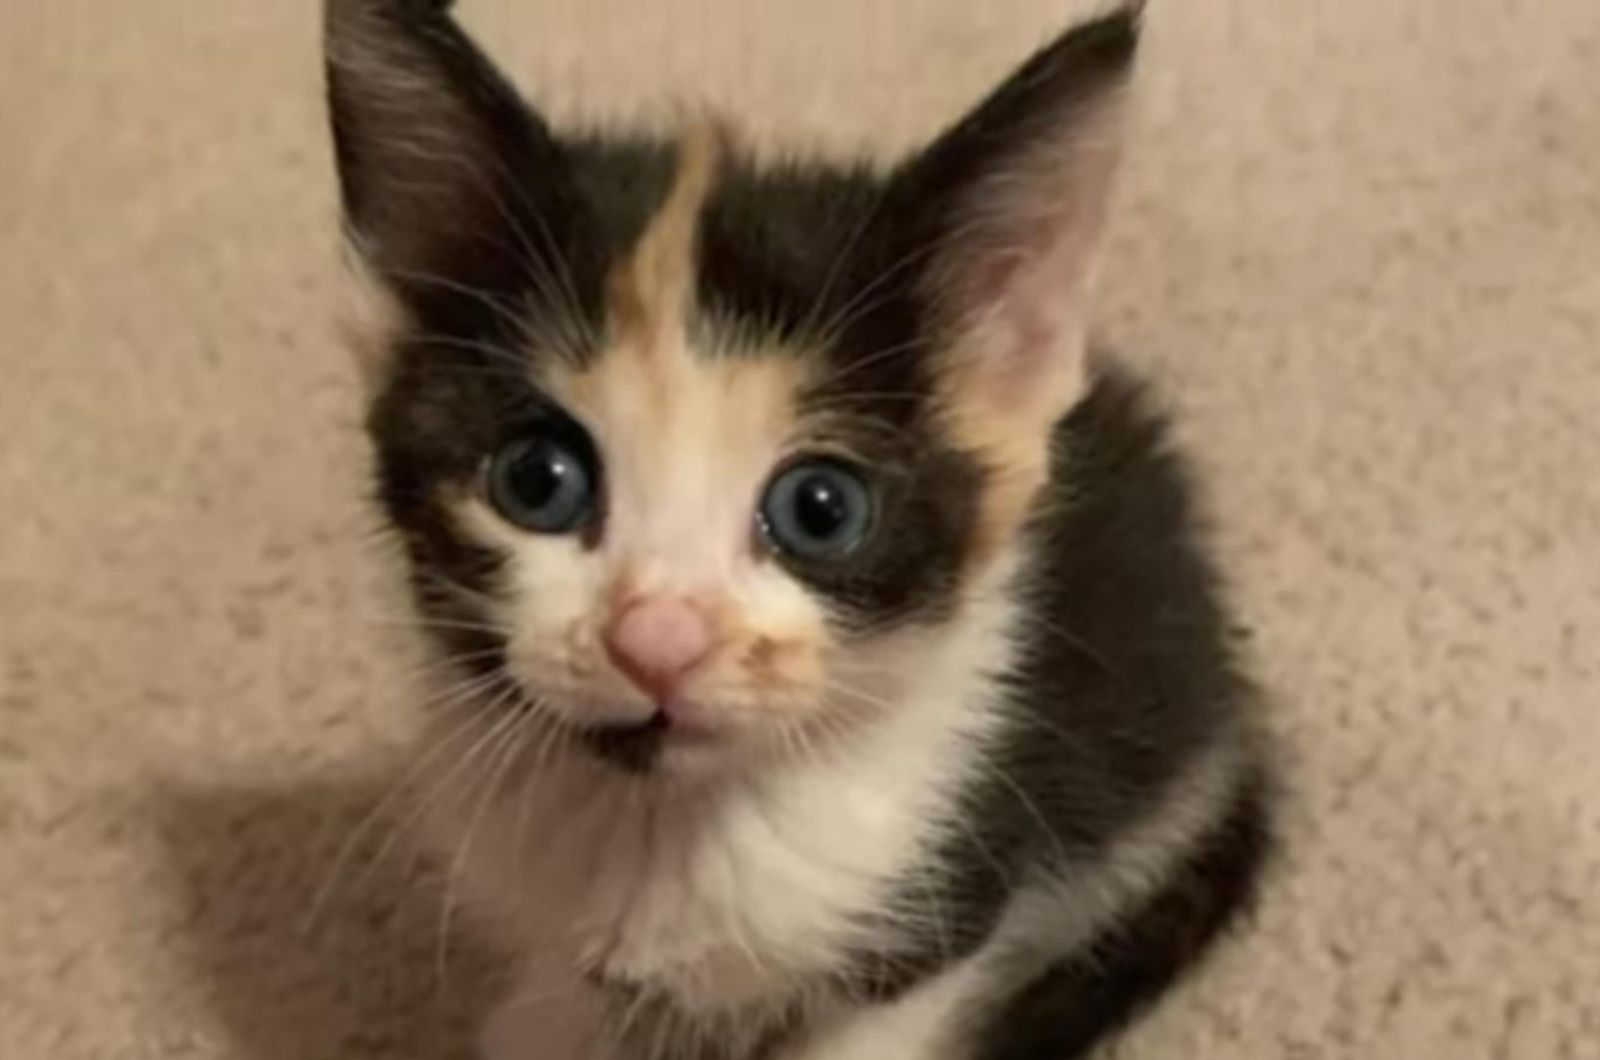 cute kitten with blue eyes